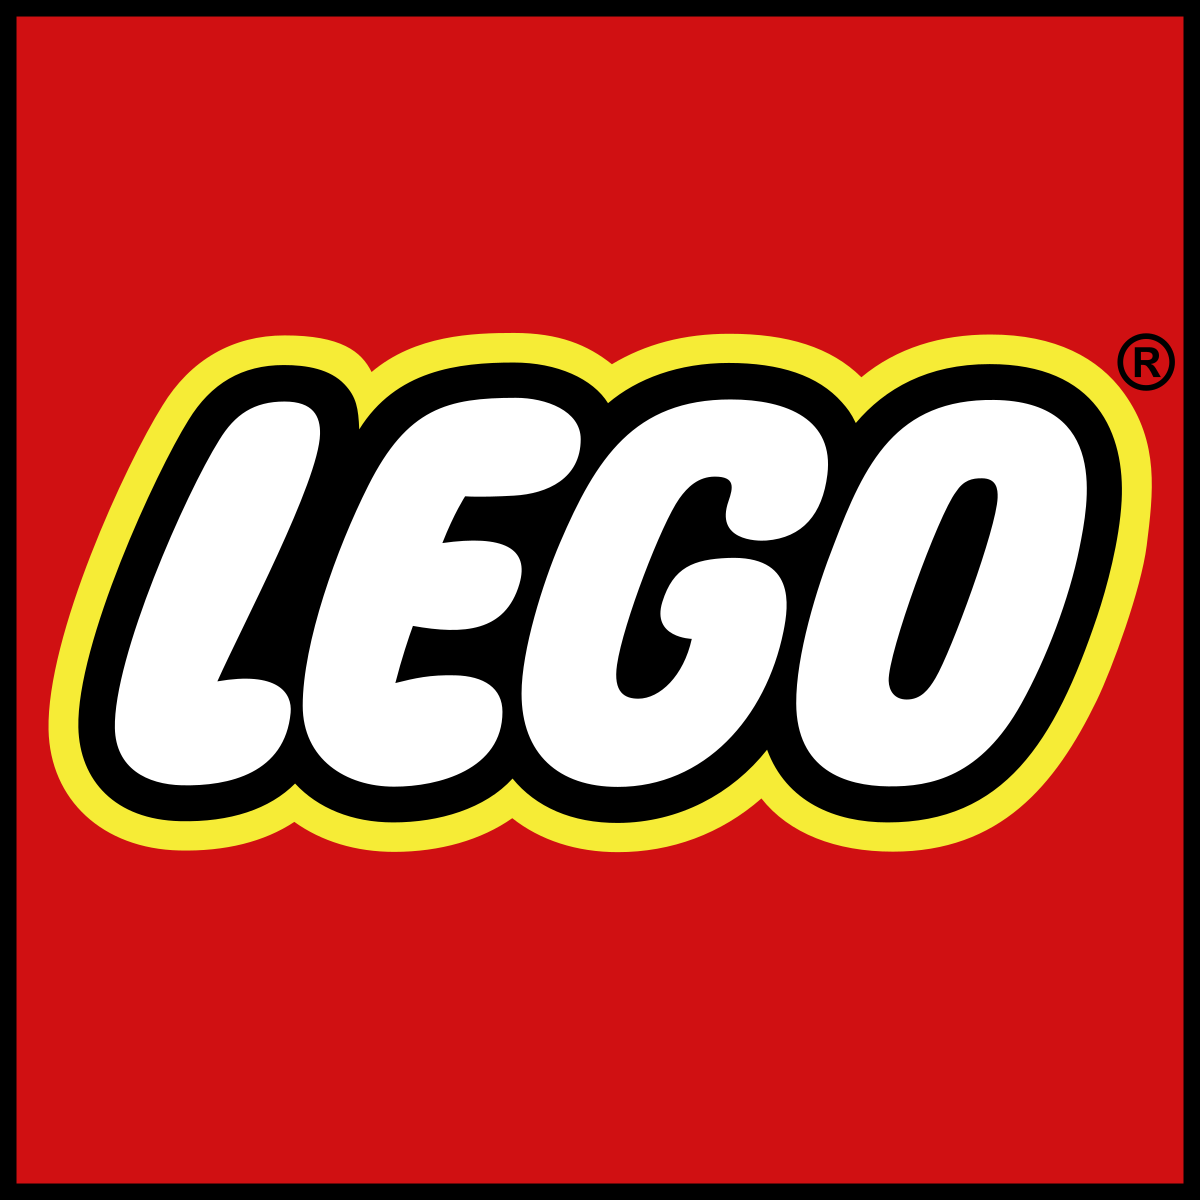 Vidiyo .. خدمة فيديو اجتماعية للواقع المعزز من Lego